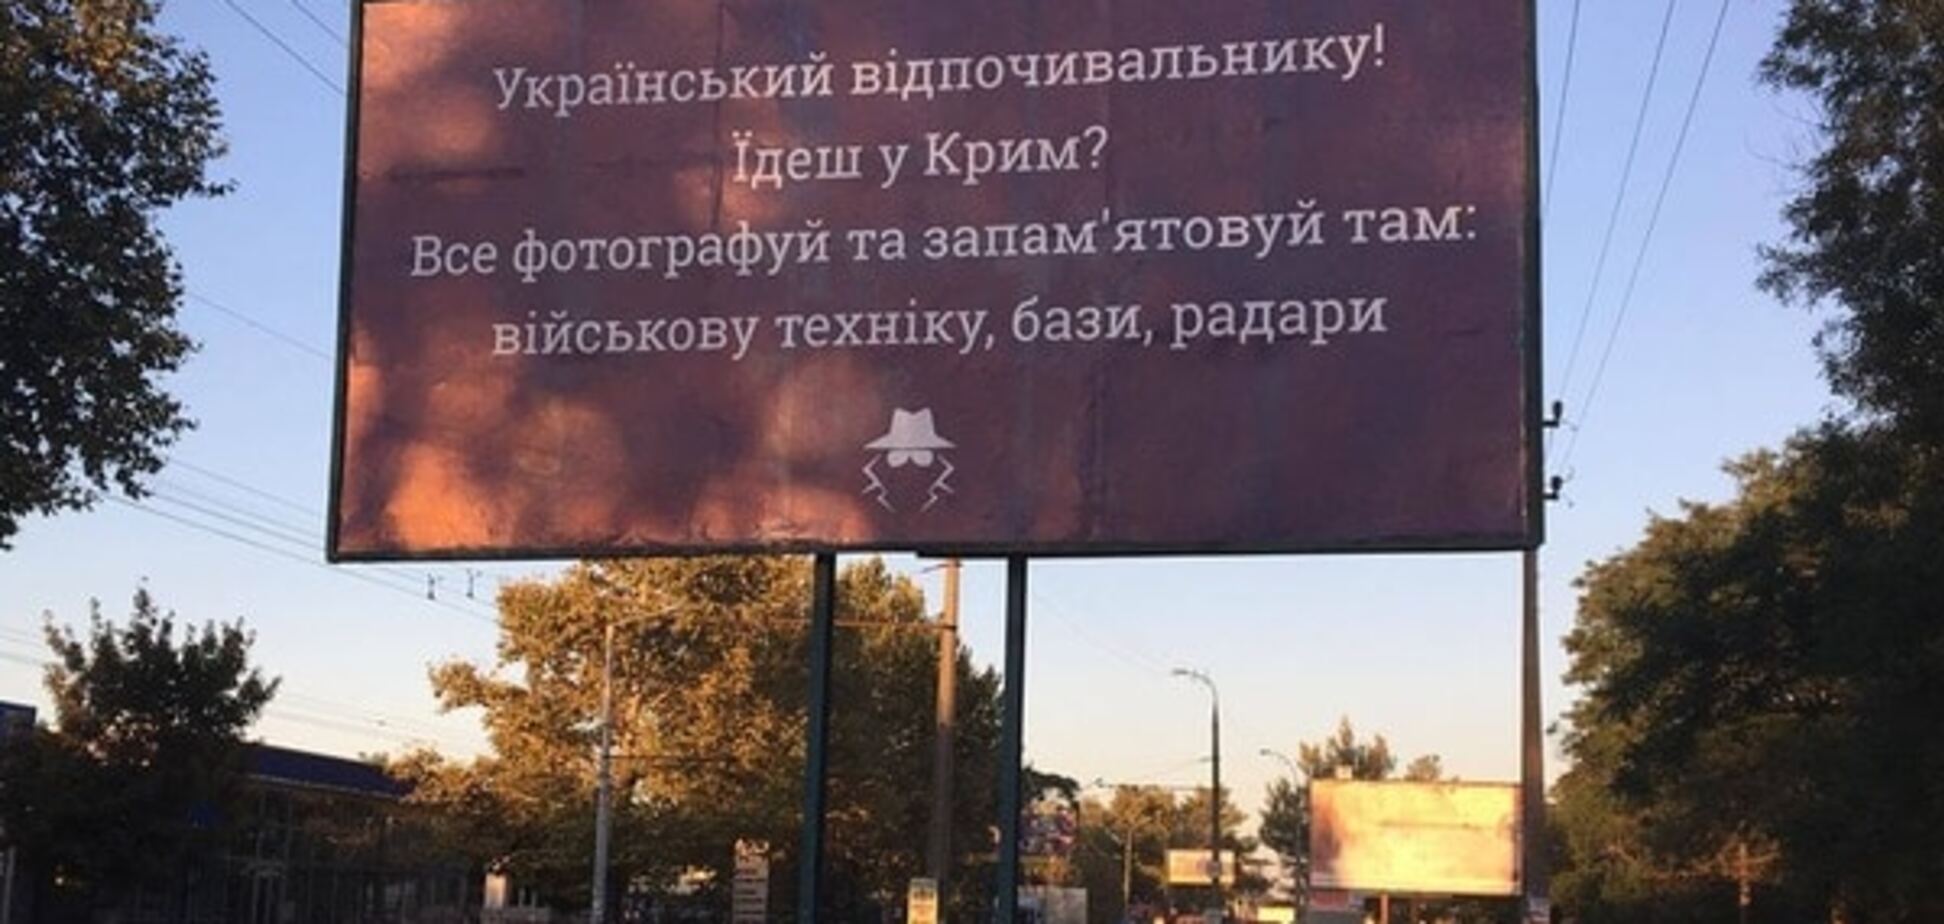 'Напугать или нагрузить': в направлении Крыма появились оригинальные билборды